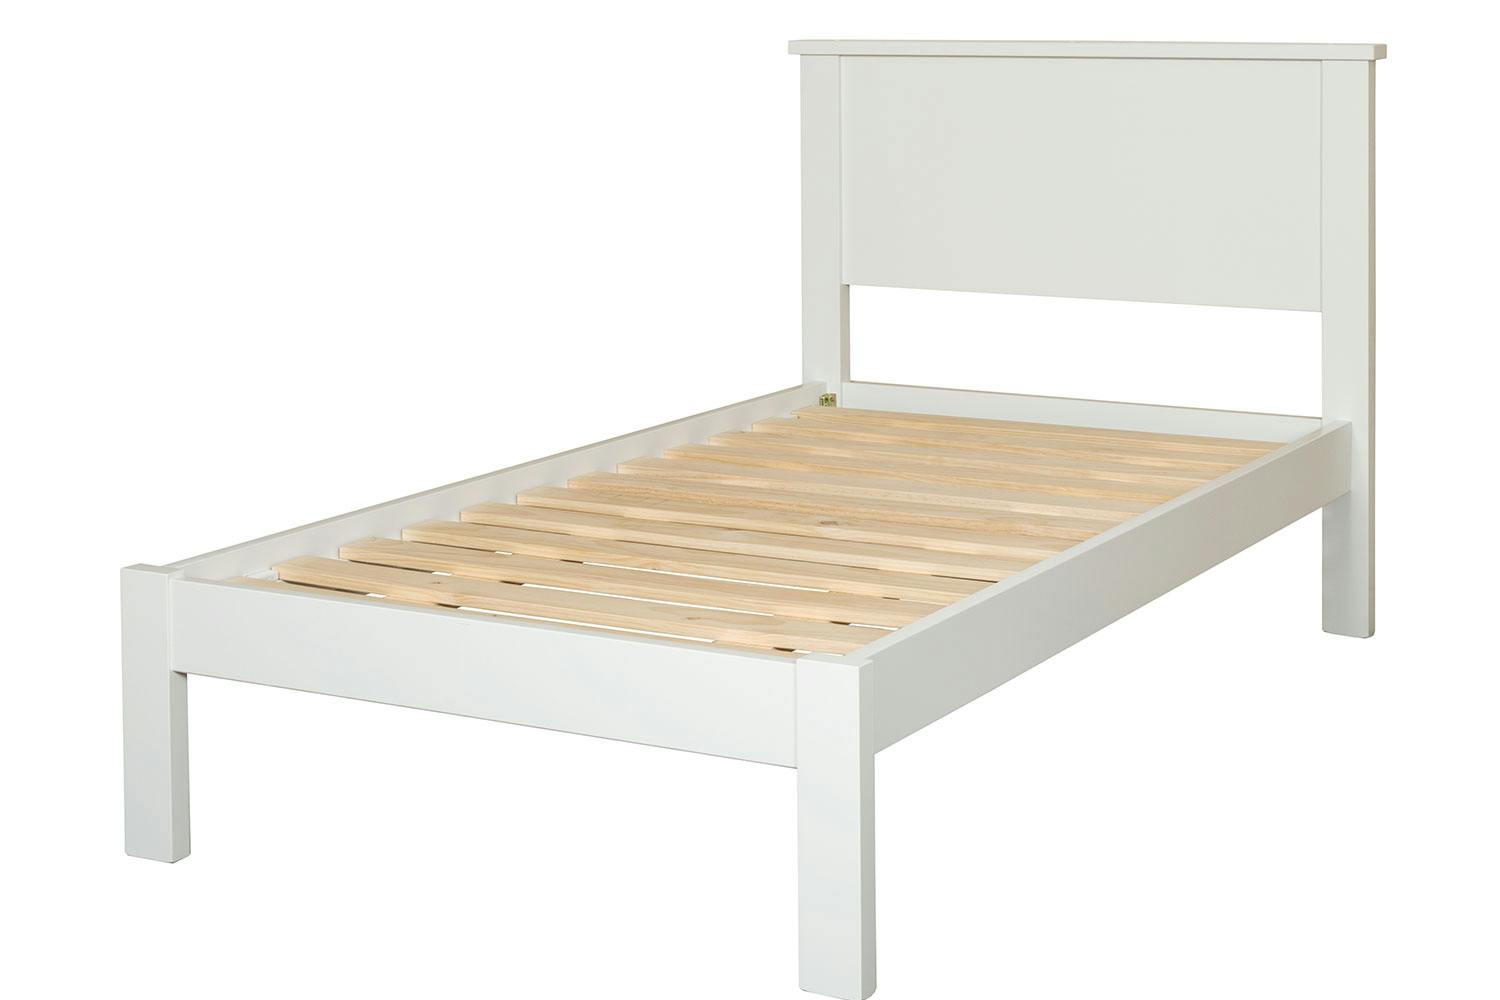 Granville Super King Bed Frame By Coastwood Furniture Harvey